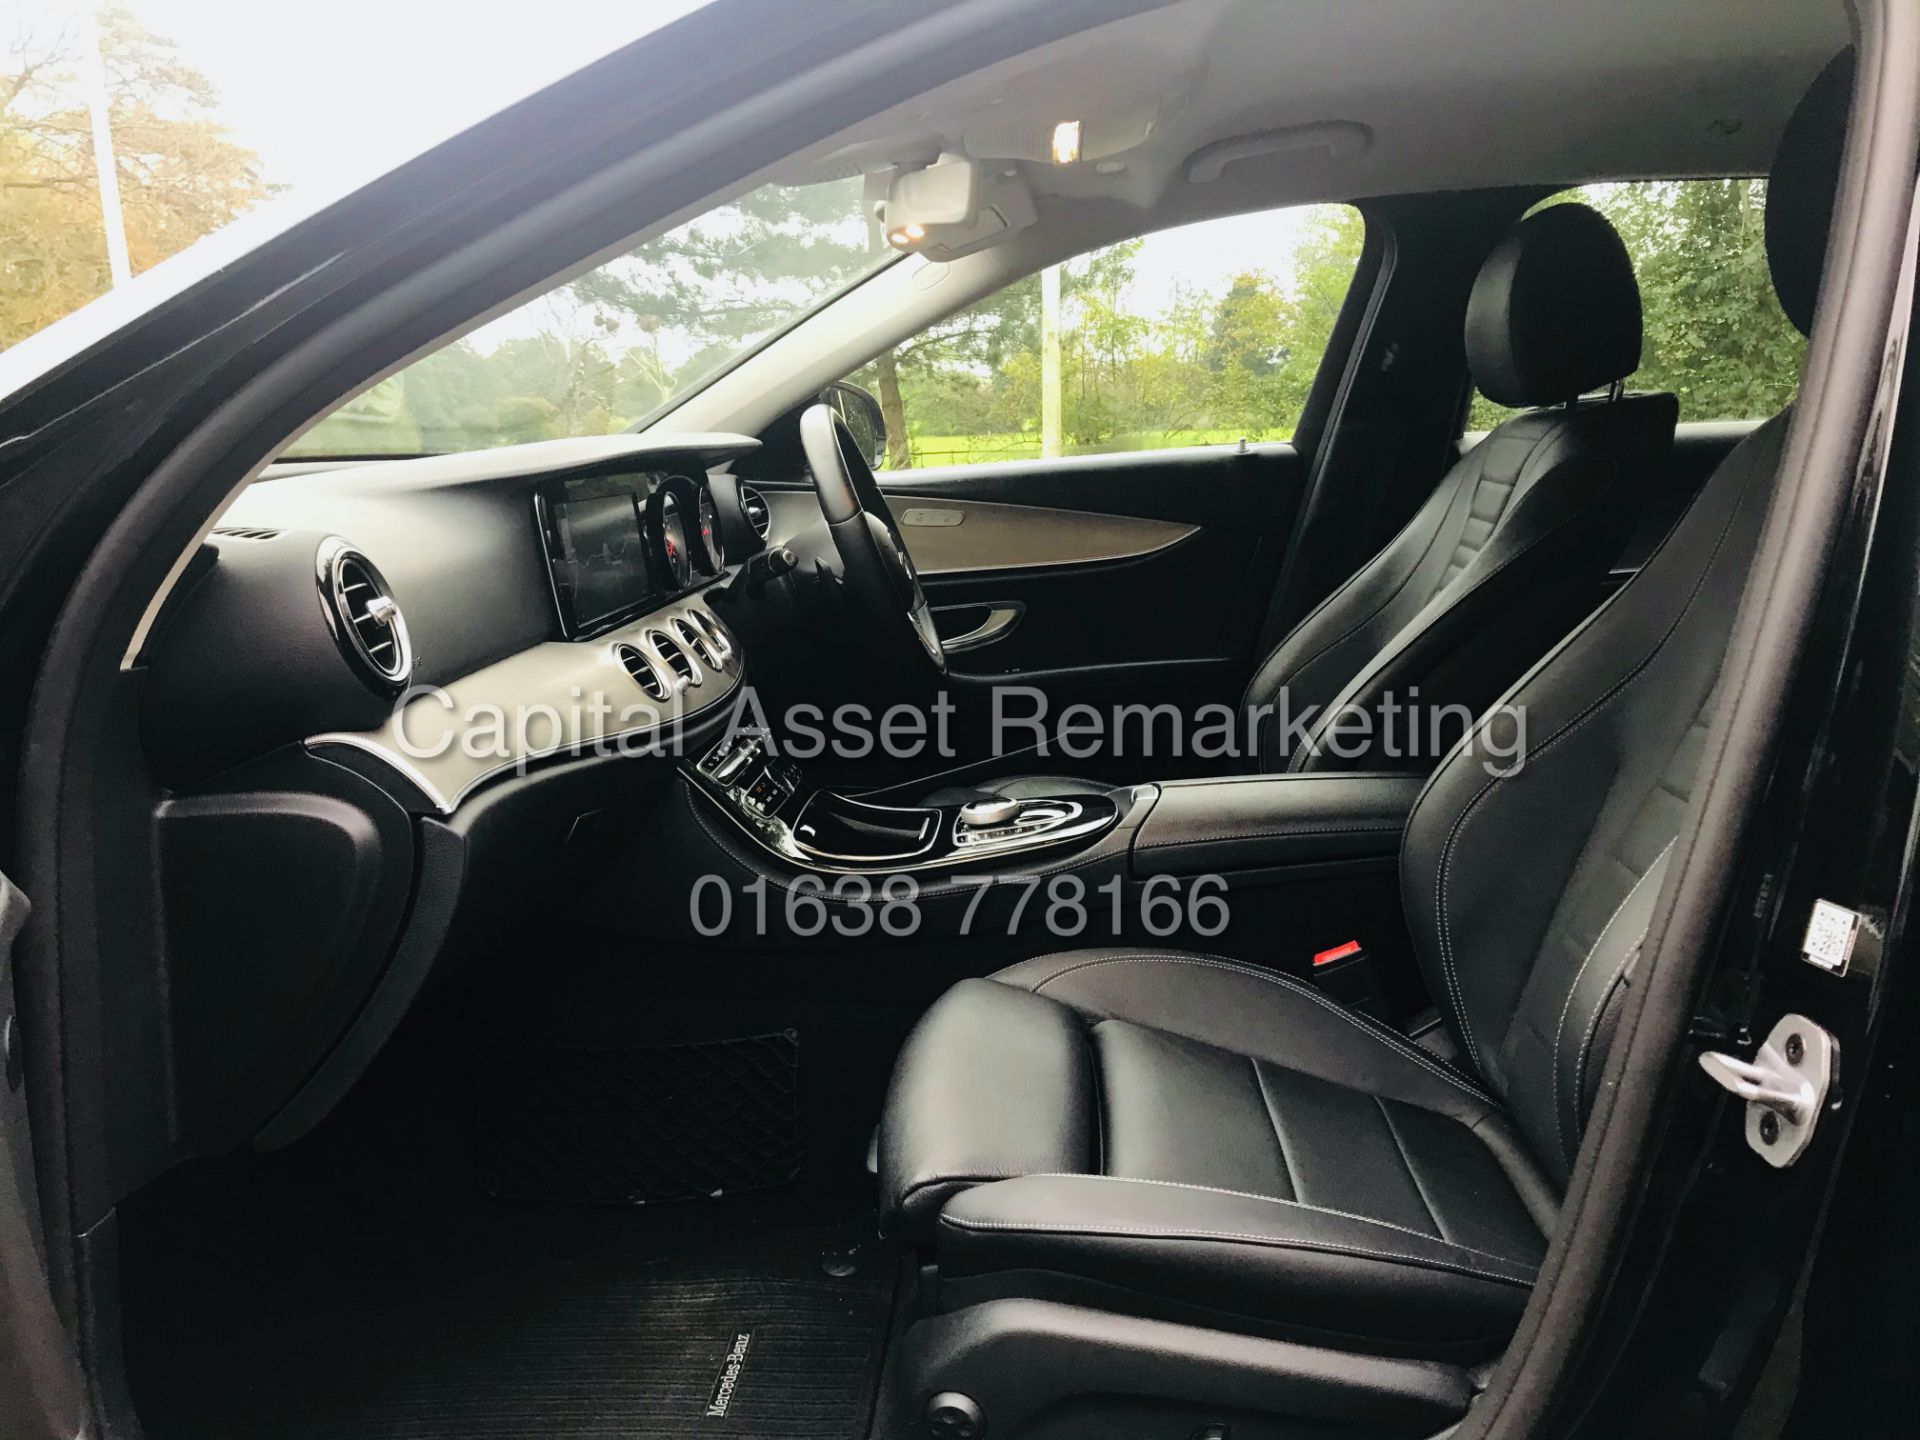 On Sale MERCEDES E220d "SE" AUTO - ESTATE CAR (2019 MODEL) HUGE SPEC - LEATHER - SAT NAV - 1 OWNER - Image 13 of 36